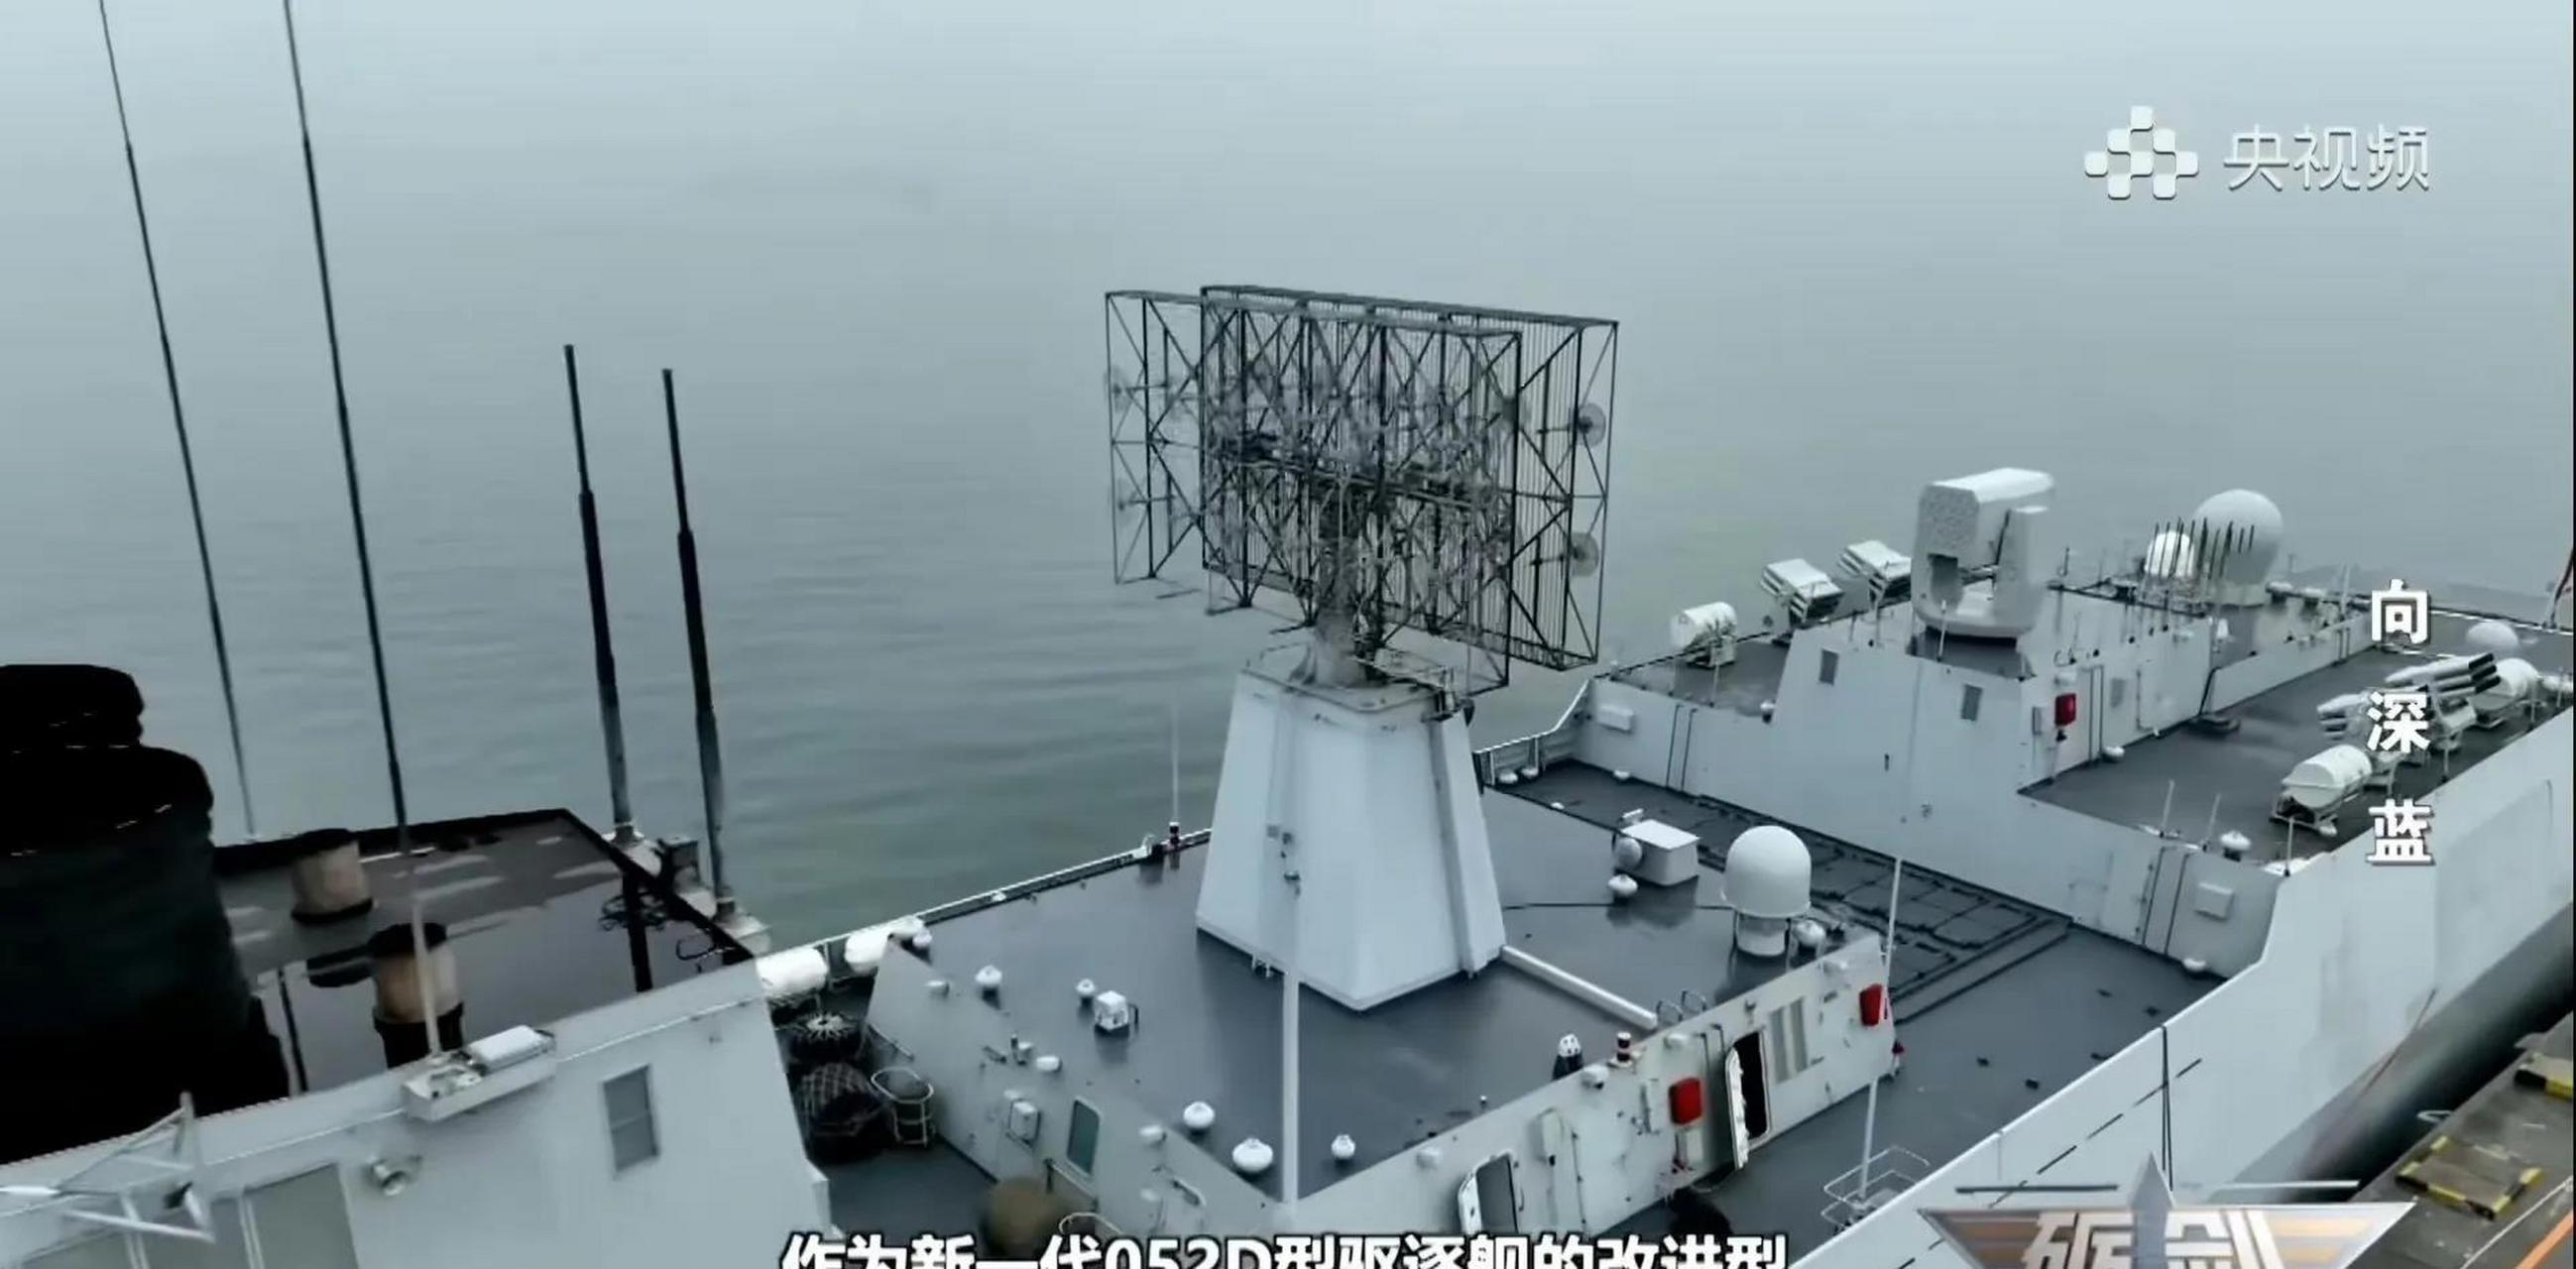 165湛江舰是052d改进型驱逐舰,加长了直升机起降加班,可以看出来海军